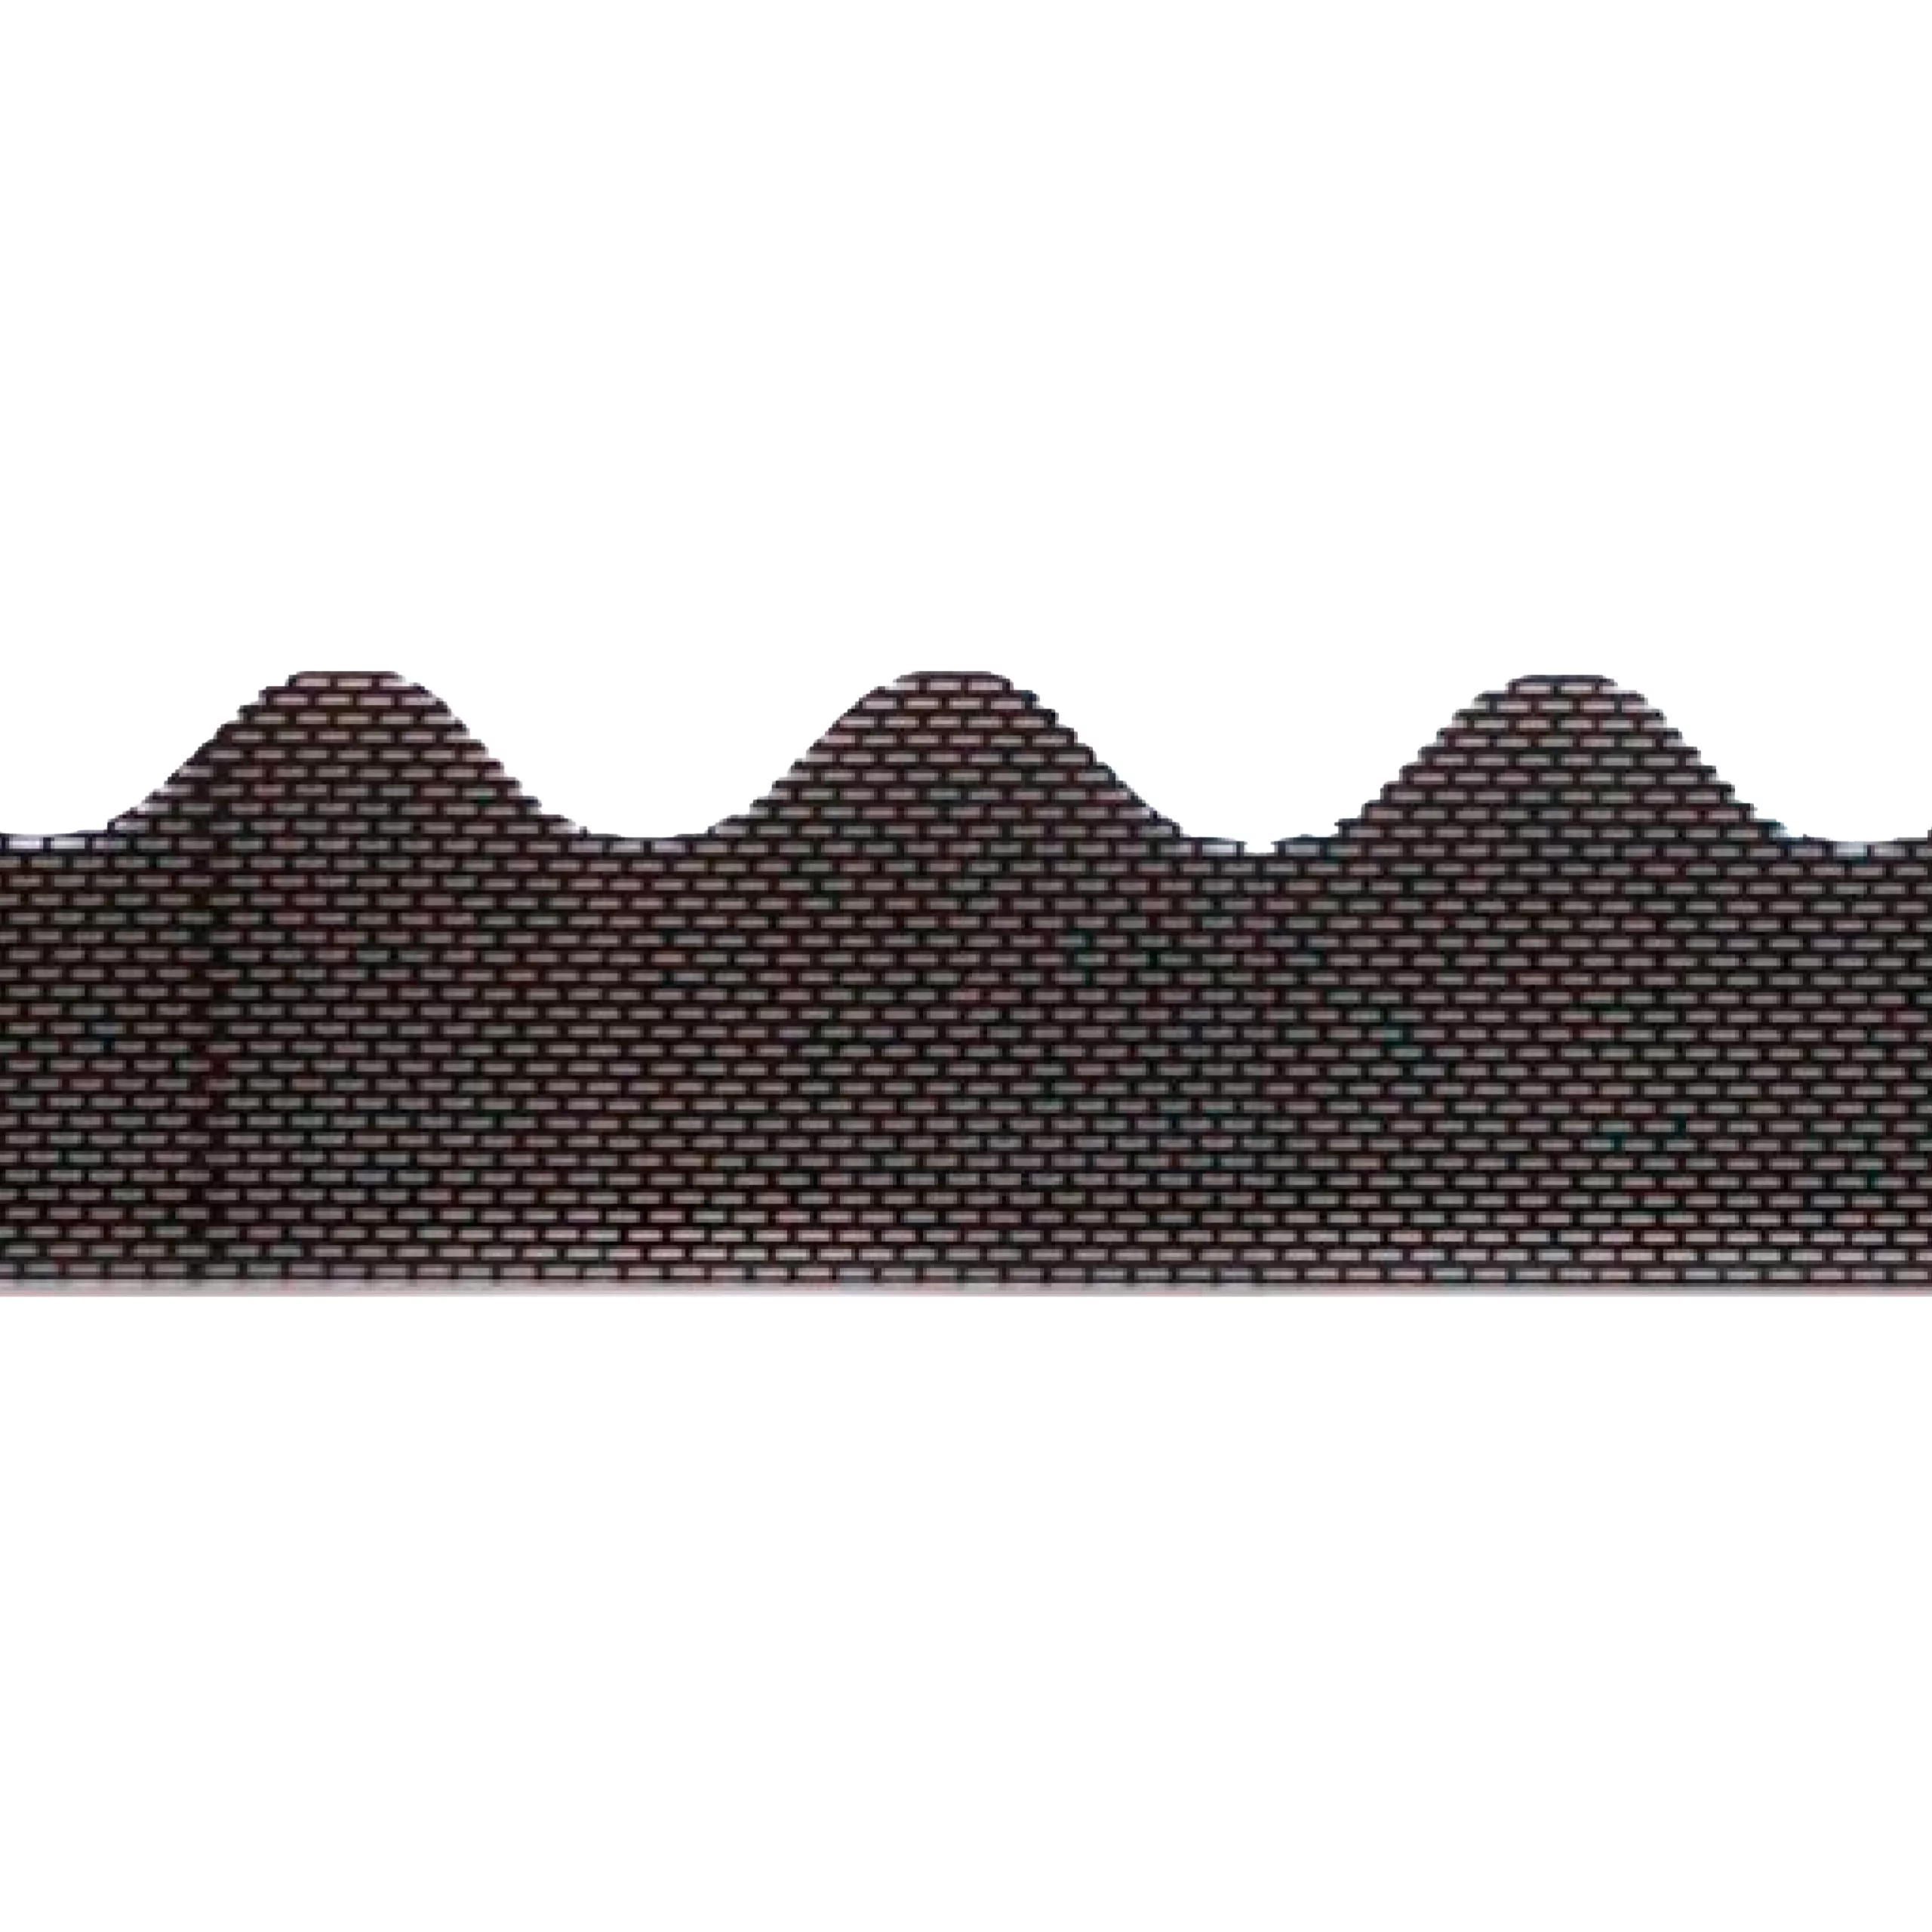 Traufenbelüftungsprofil aus PVC 87,3 cm